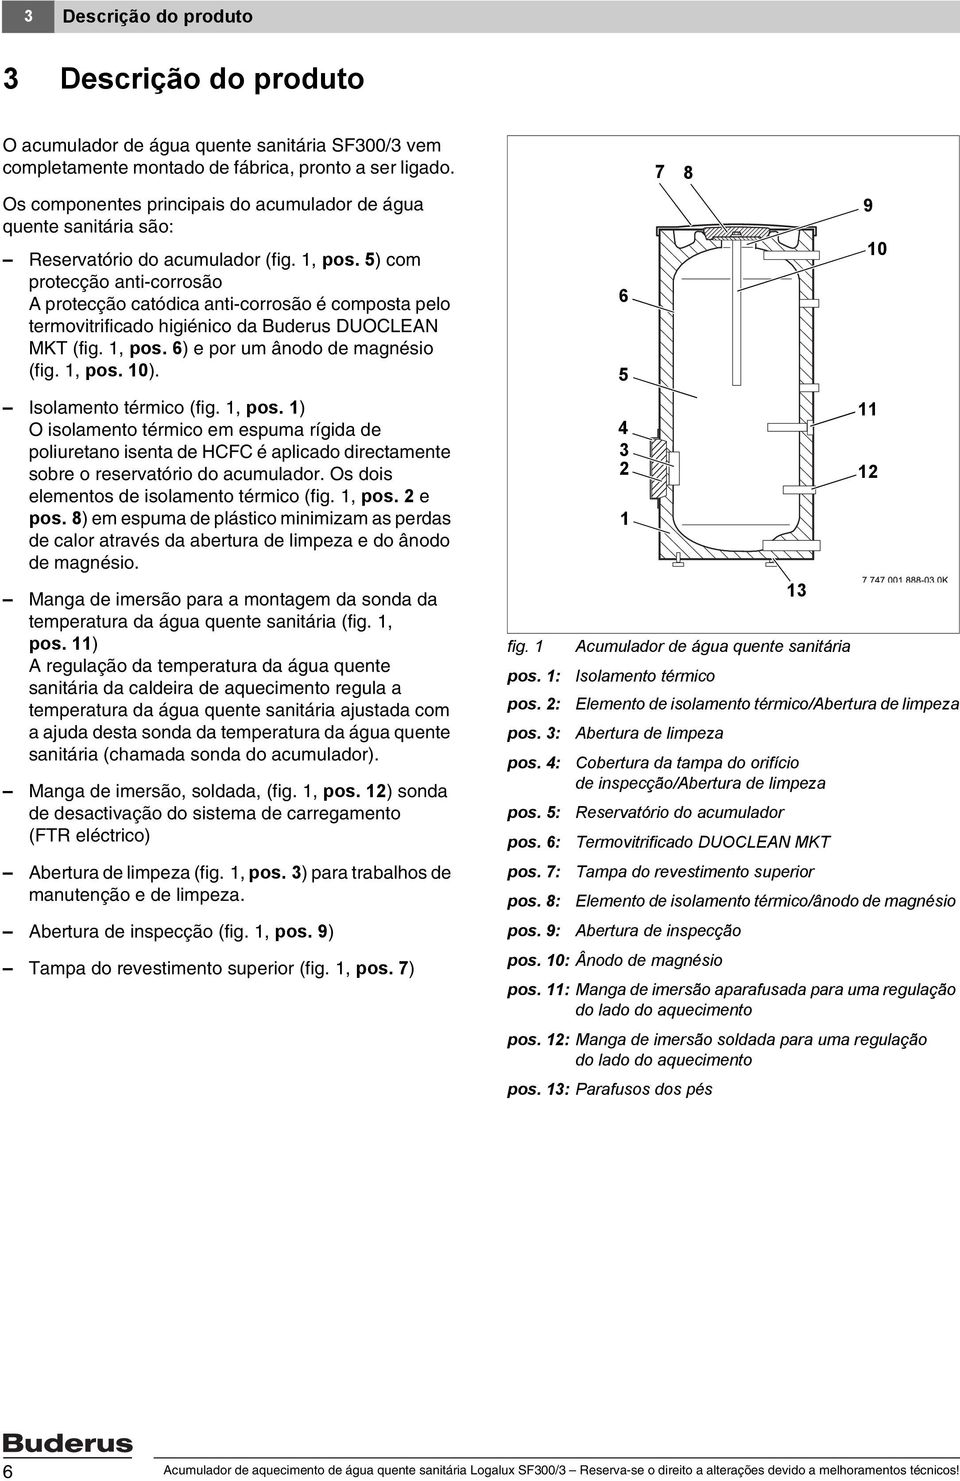 5) com protecção anti-corrosão A protecção catódica anti-corrosão é composta pelo termovitrificado higiénico da Buderus DUOCLEAN MKT (fig., pos. 6) e por um ânodo de magnésio (fig., pos. 0).